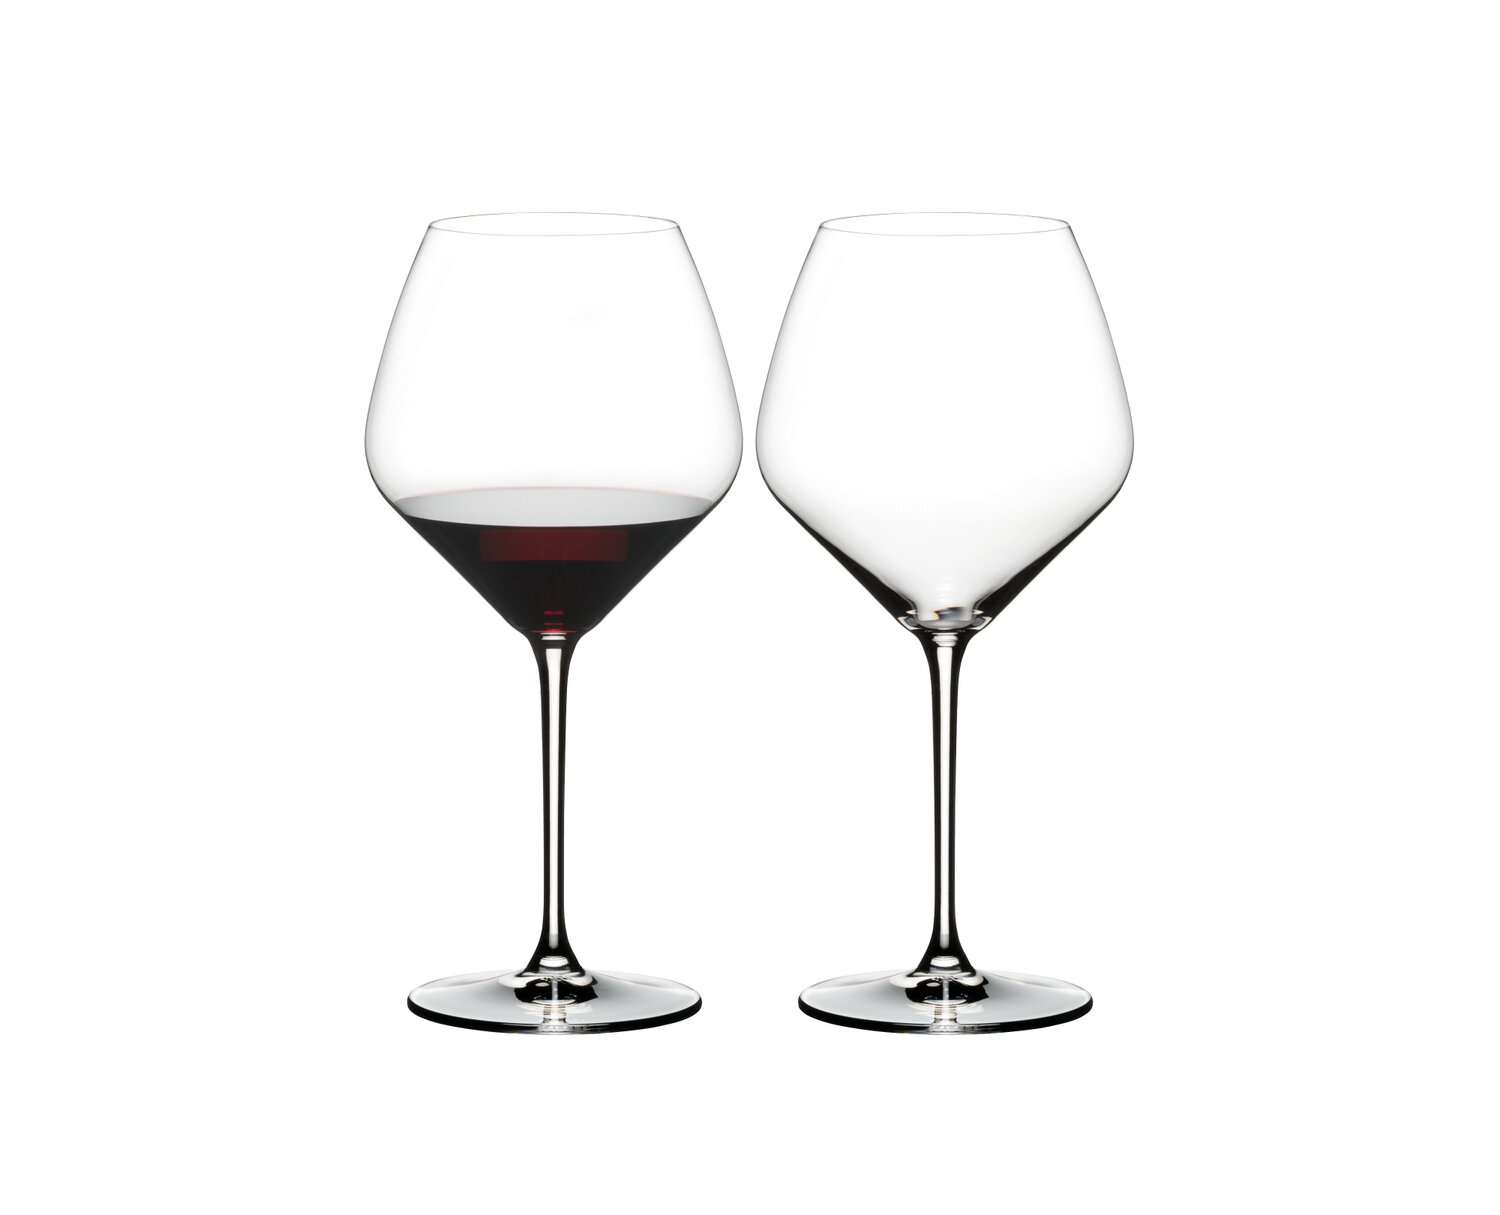 https://assets.wfcdn.com/im/14165227/compr-r85/1917/191755108/riedel-extreme-pinot-noir-wine-glass.jpg